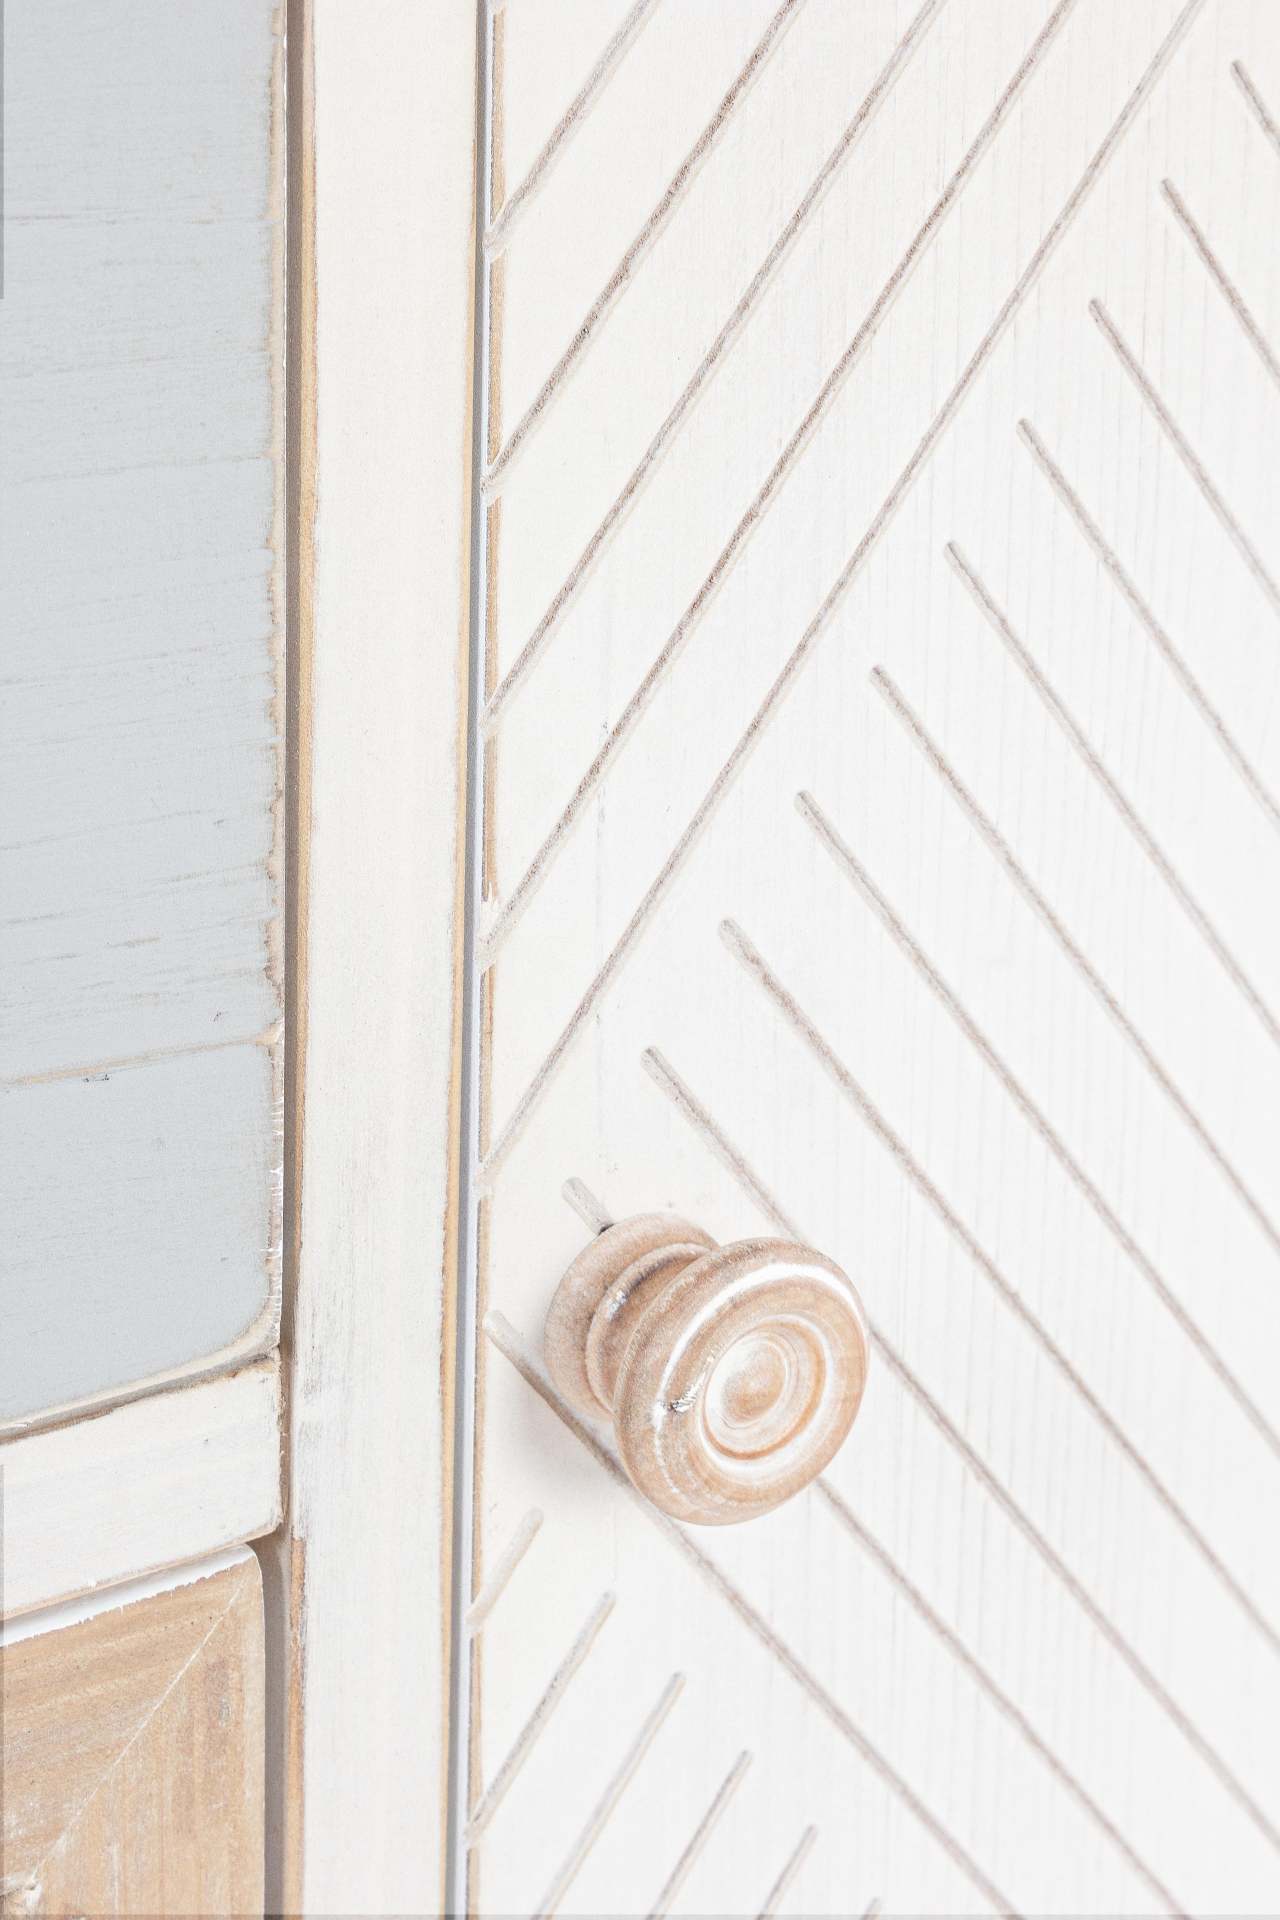 Die Kommode Clotilde überzeugt mit ihrem klassischen Design. Gefertigt wurde sie aus Tannen-Holz, welches einen weißen Farbton besitzt. Die Türen sind aus Rattan und haben eine natürliche Farbe. Die Kommode verfügt über zwei Türen und drei Schubladen. Die